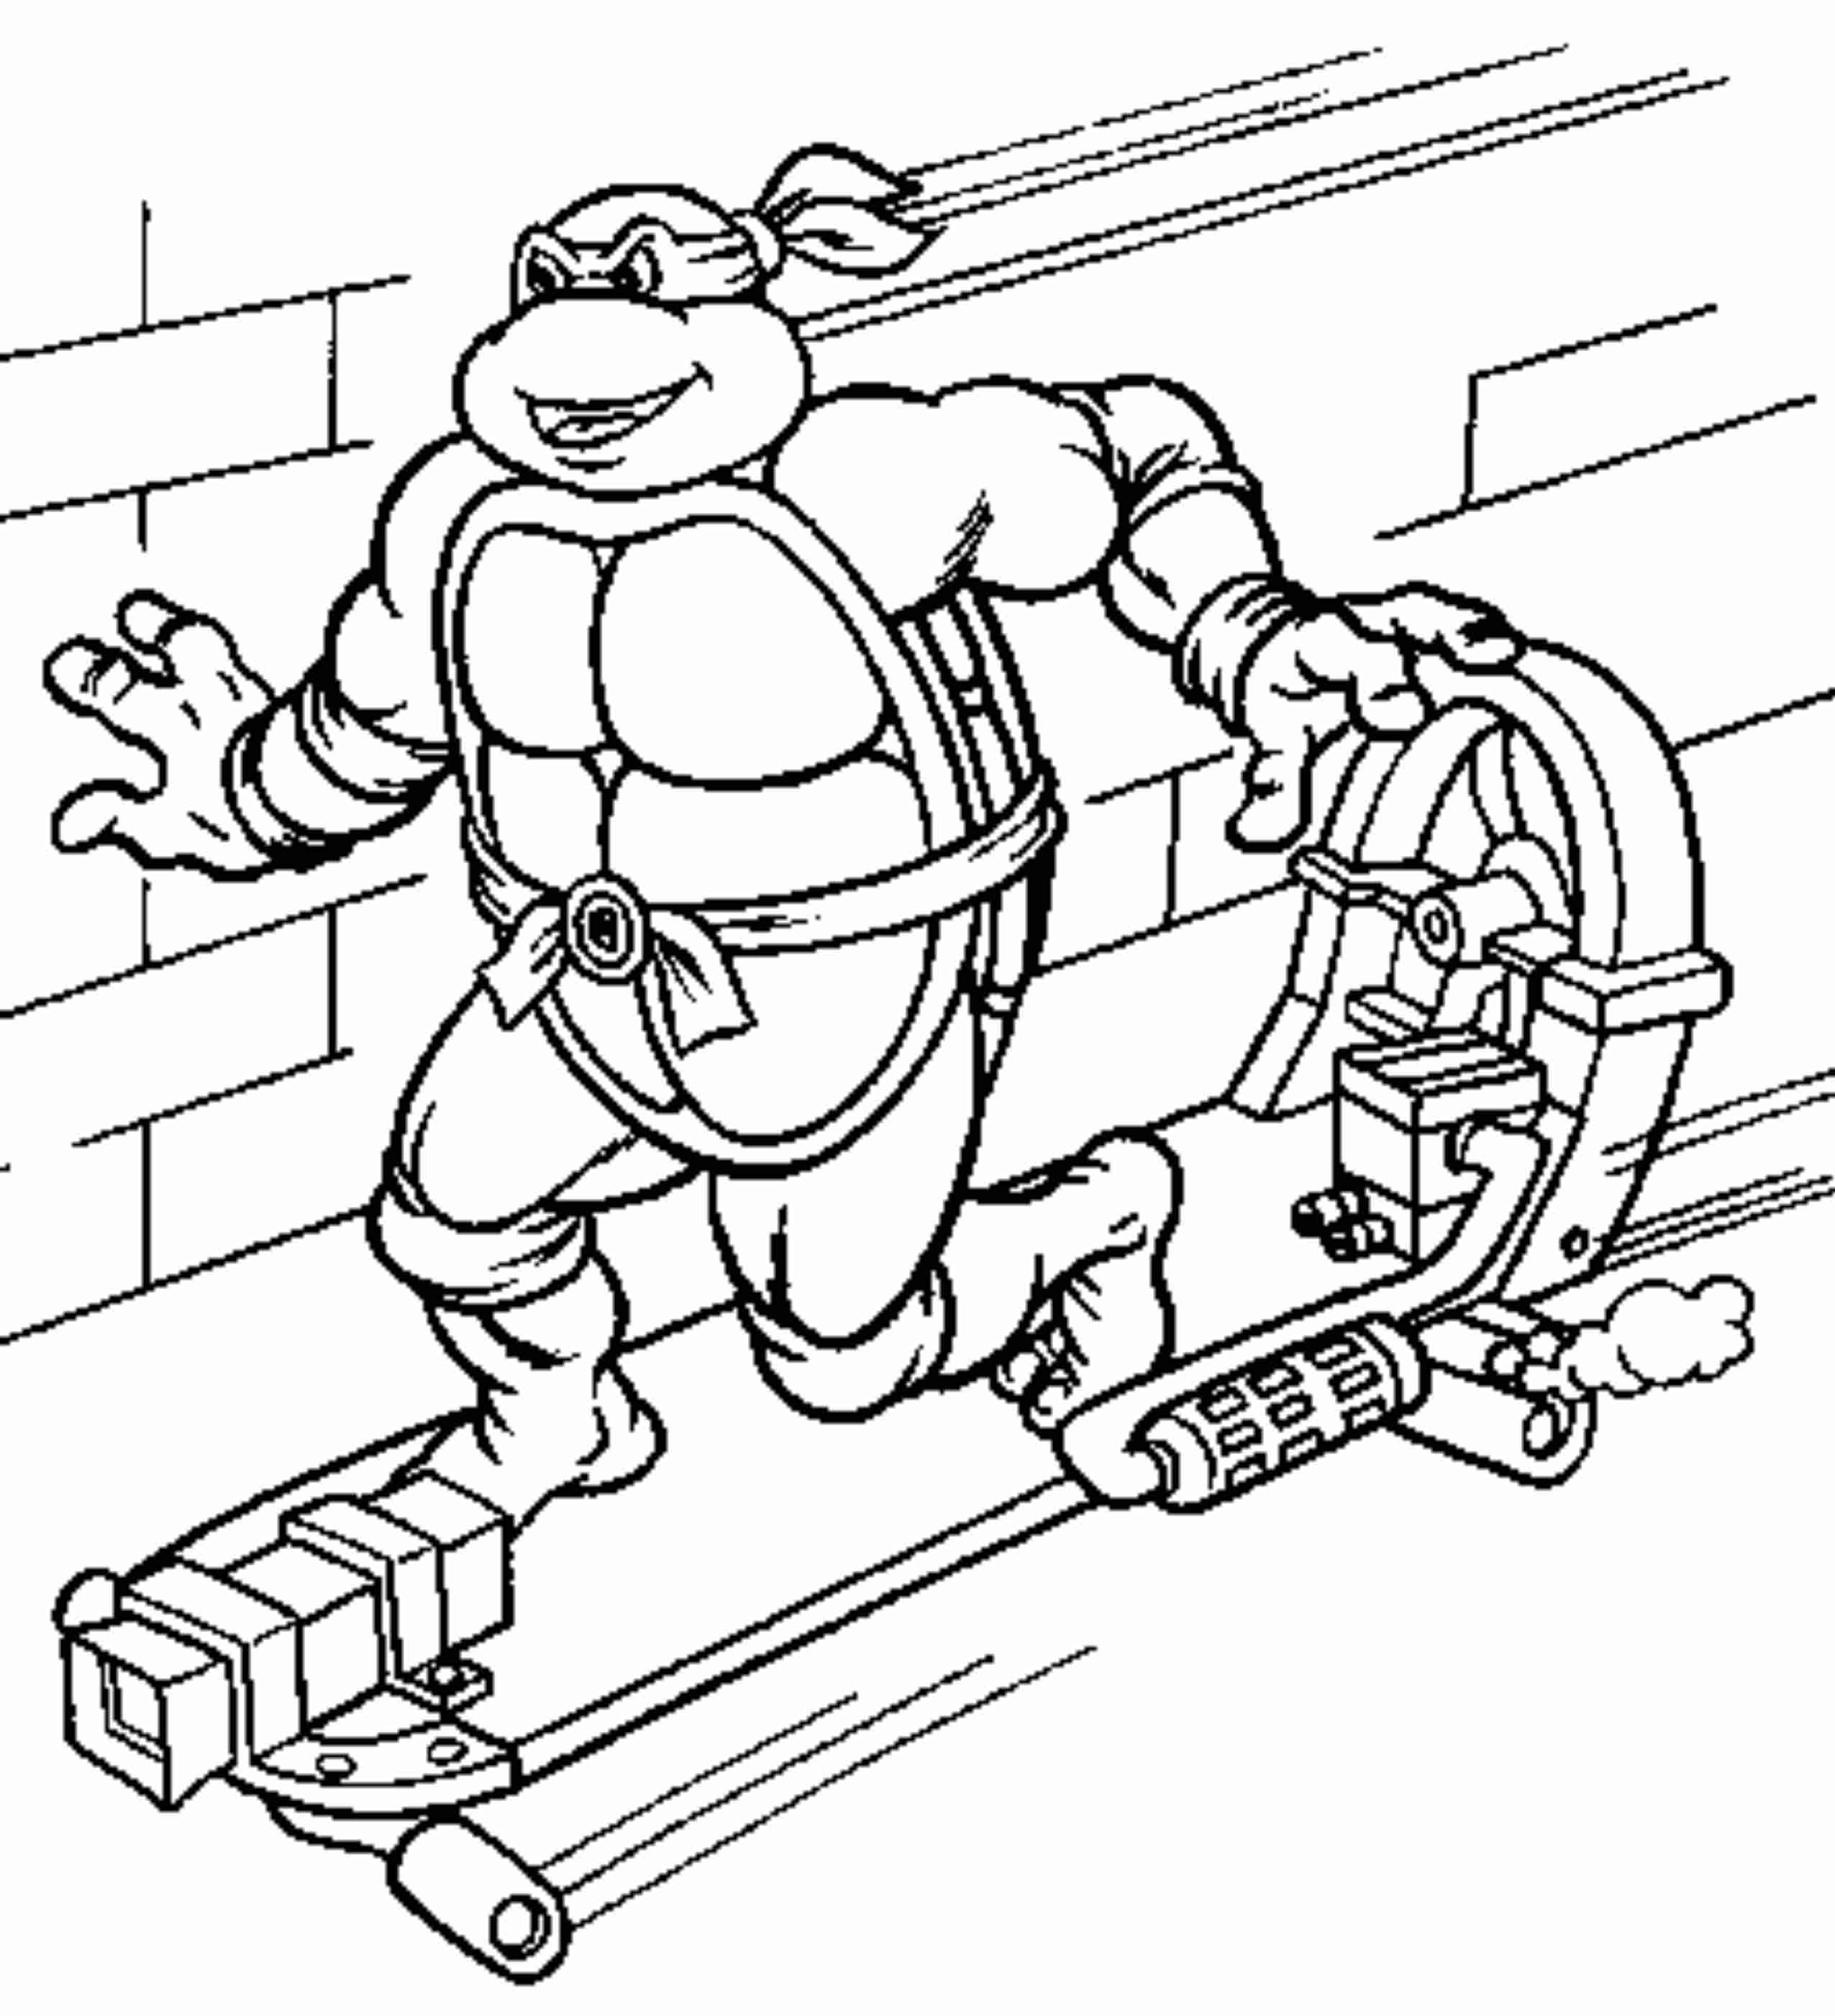 Download ninja-turtle-skateboard-coloring-pages | | BestAppsForKids.com